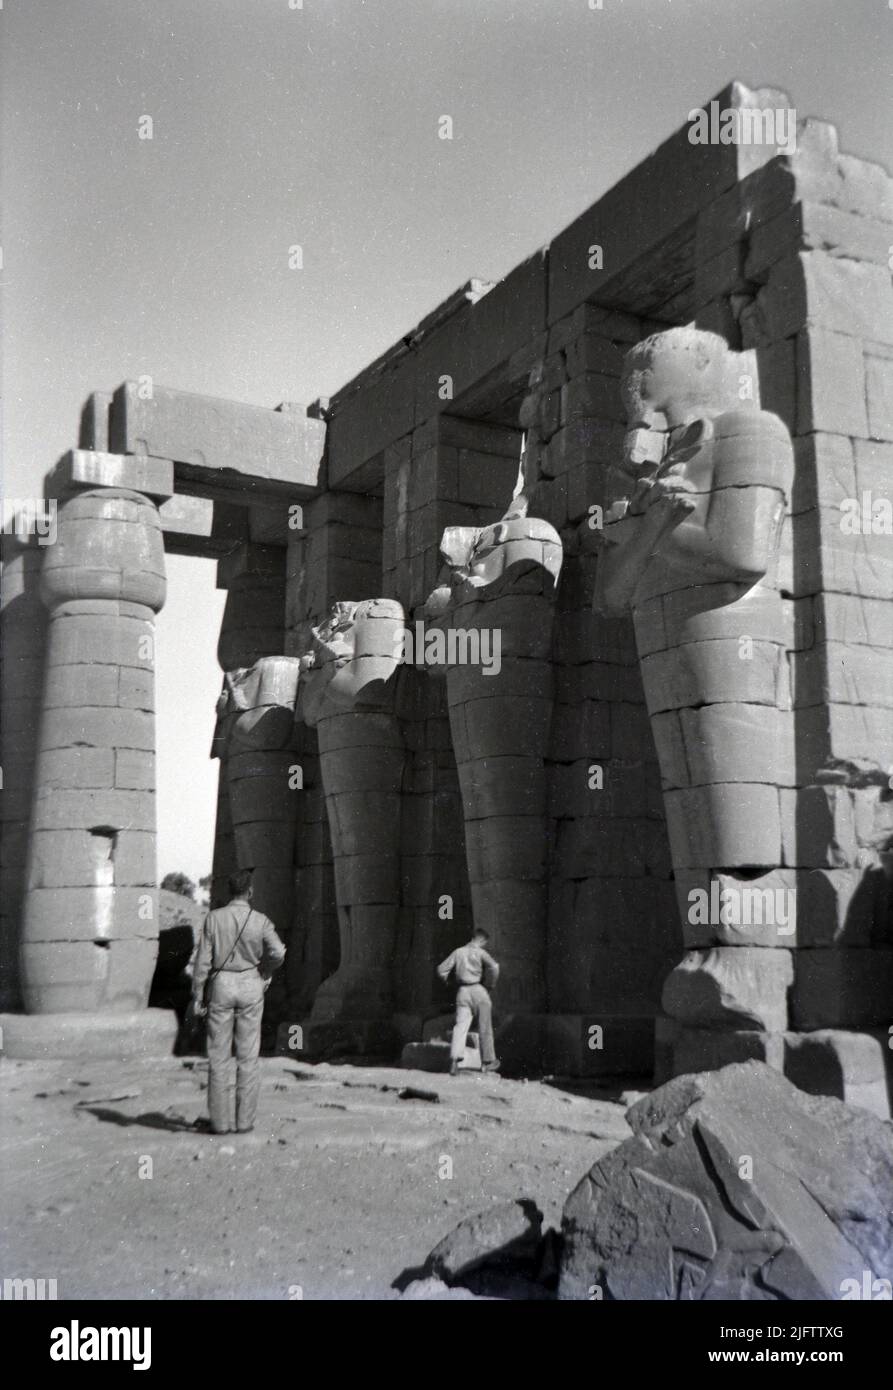 Egitto Luxor Tempio di Karnak rovine Ramesseum di Ramseses II Tebe foto d'epoca scattata alla fine del 1940s due uomini che osservano le rovine Foto Stock